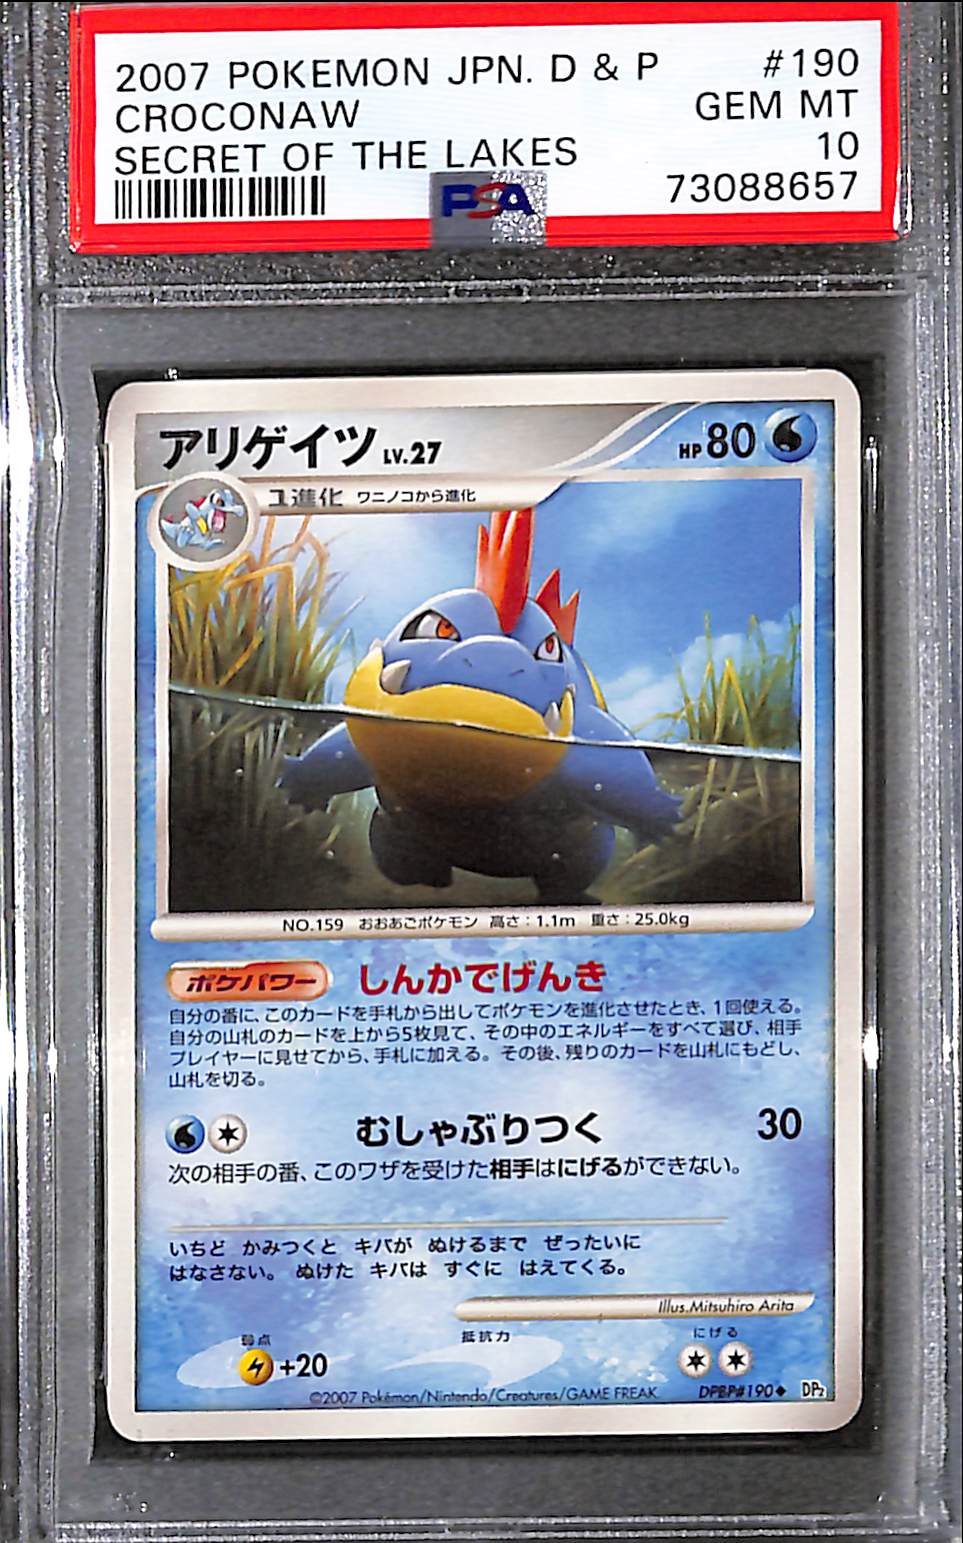 PSA10 - 2007 Pokemon Japanese - Croconaw DPBP 190 - Secret Of The Lakes - TCGroupAU